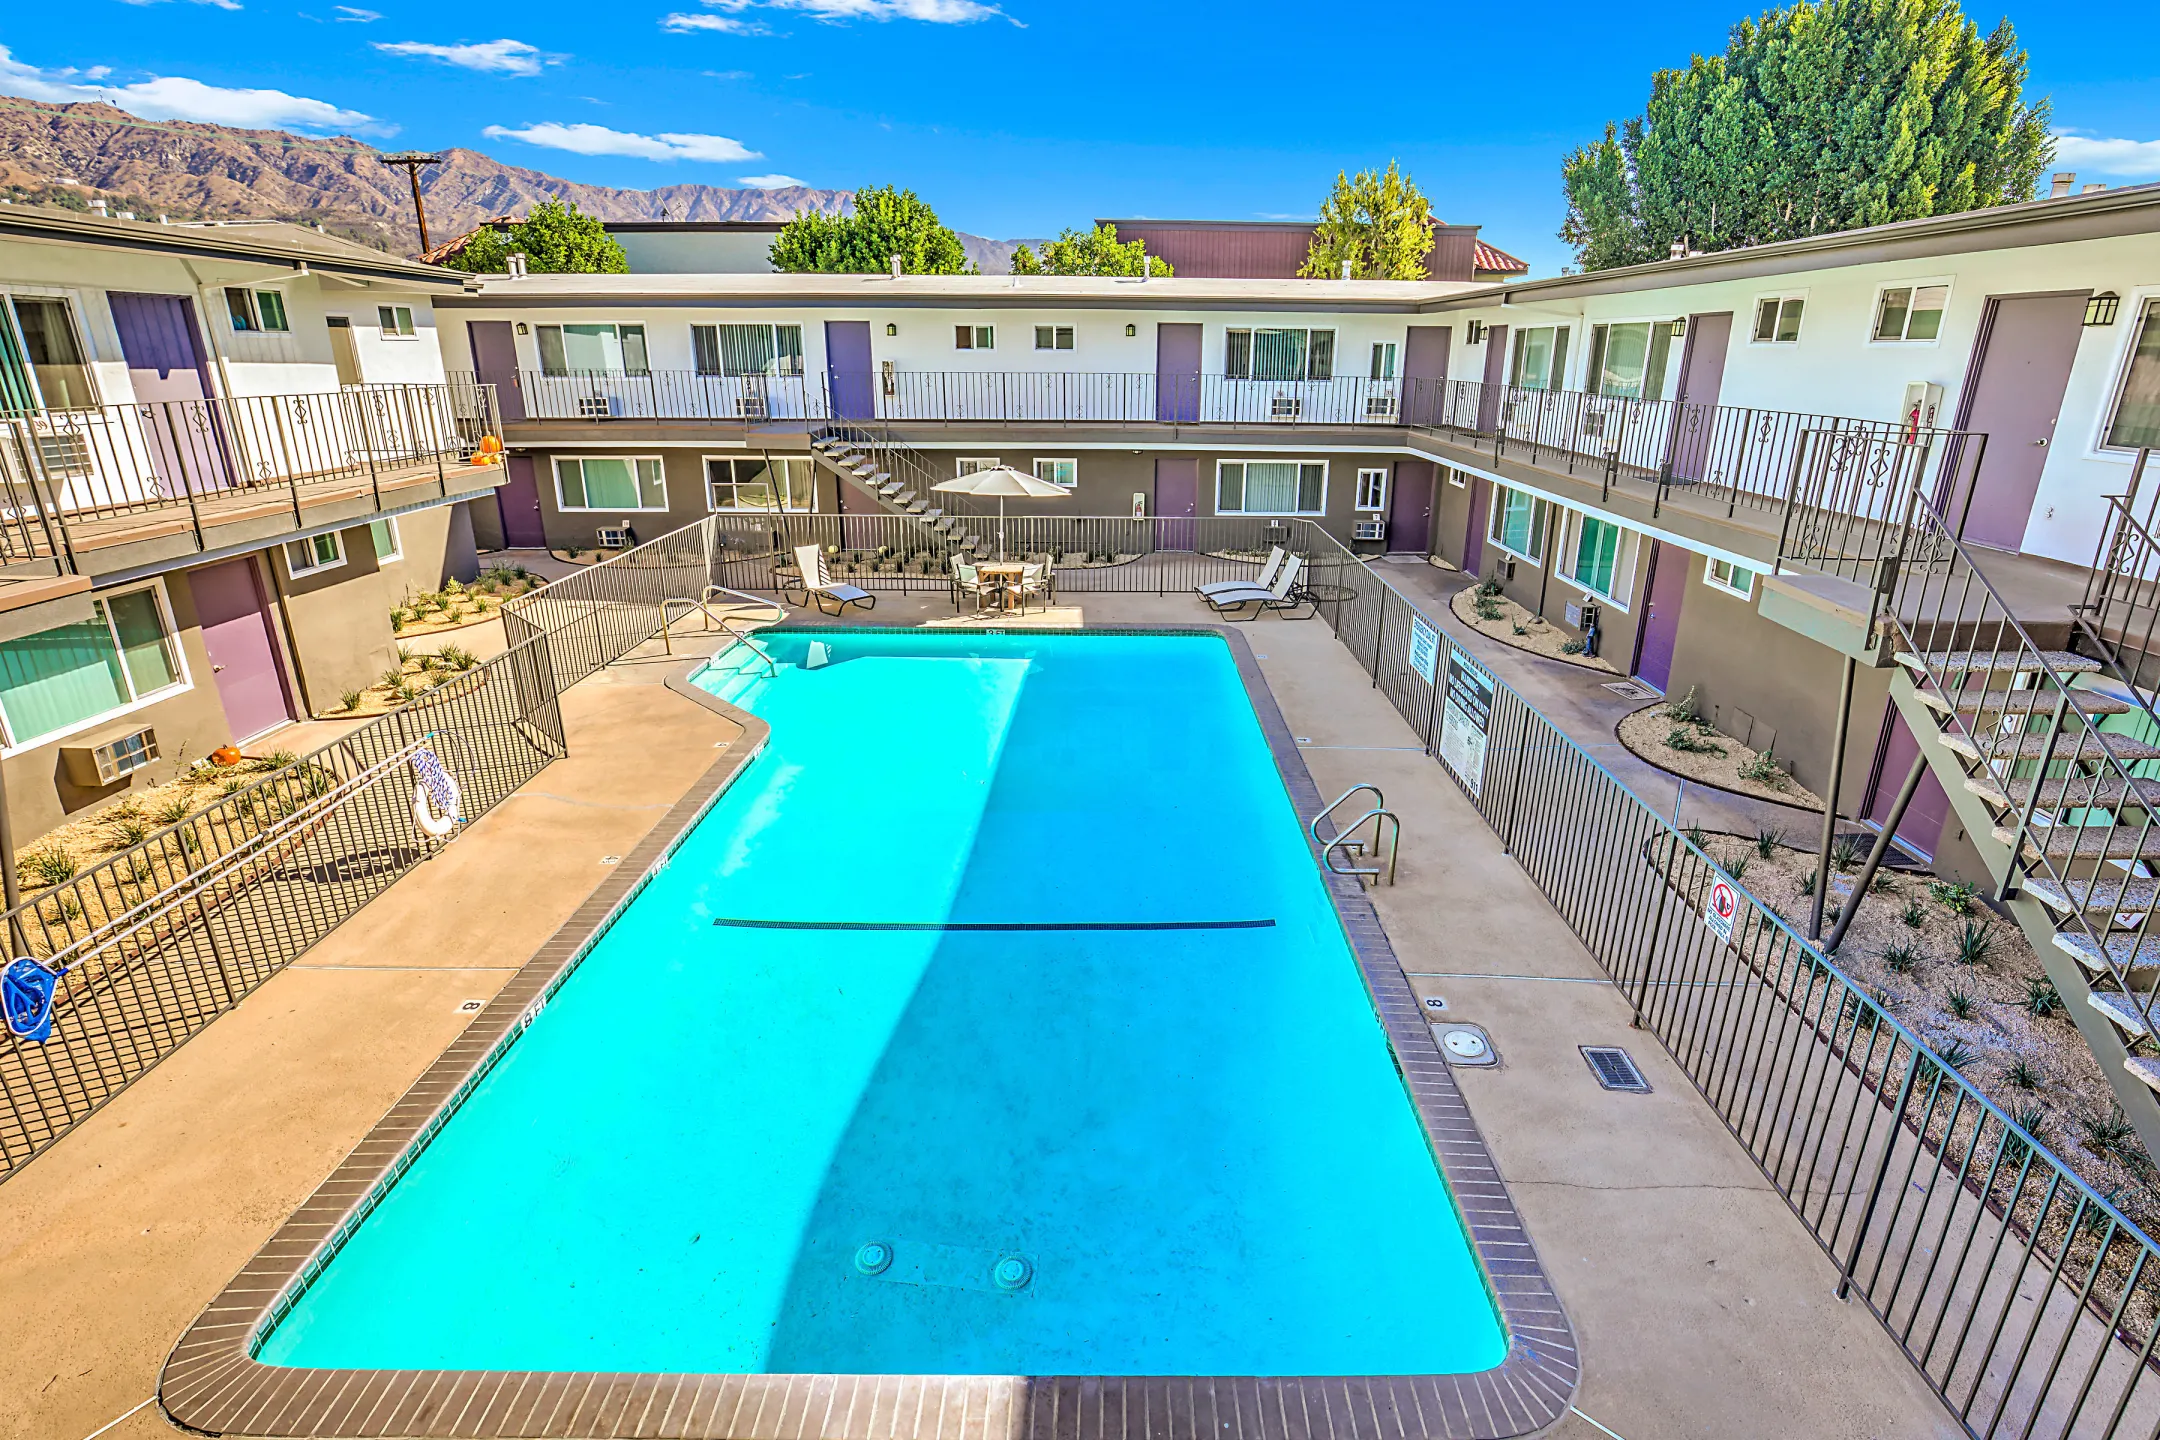 Pool - Luxe at Burbank - Burbank, CA